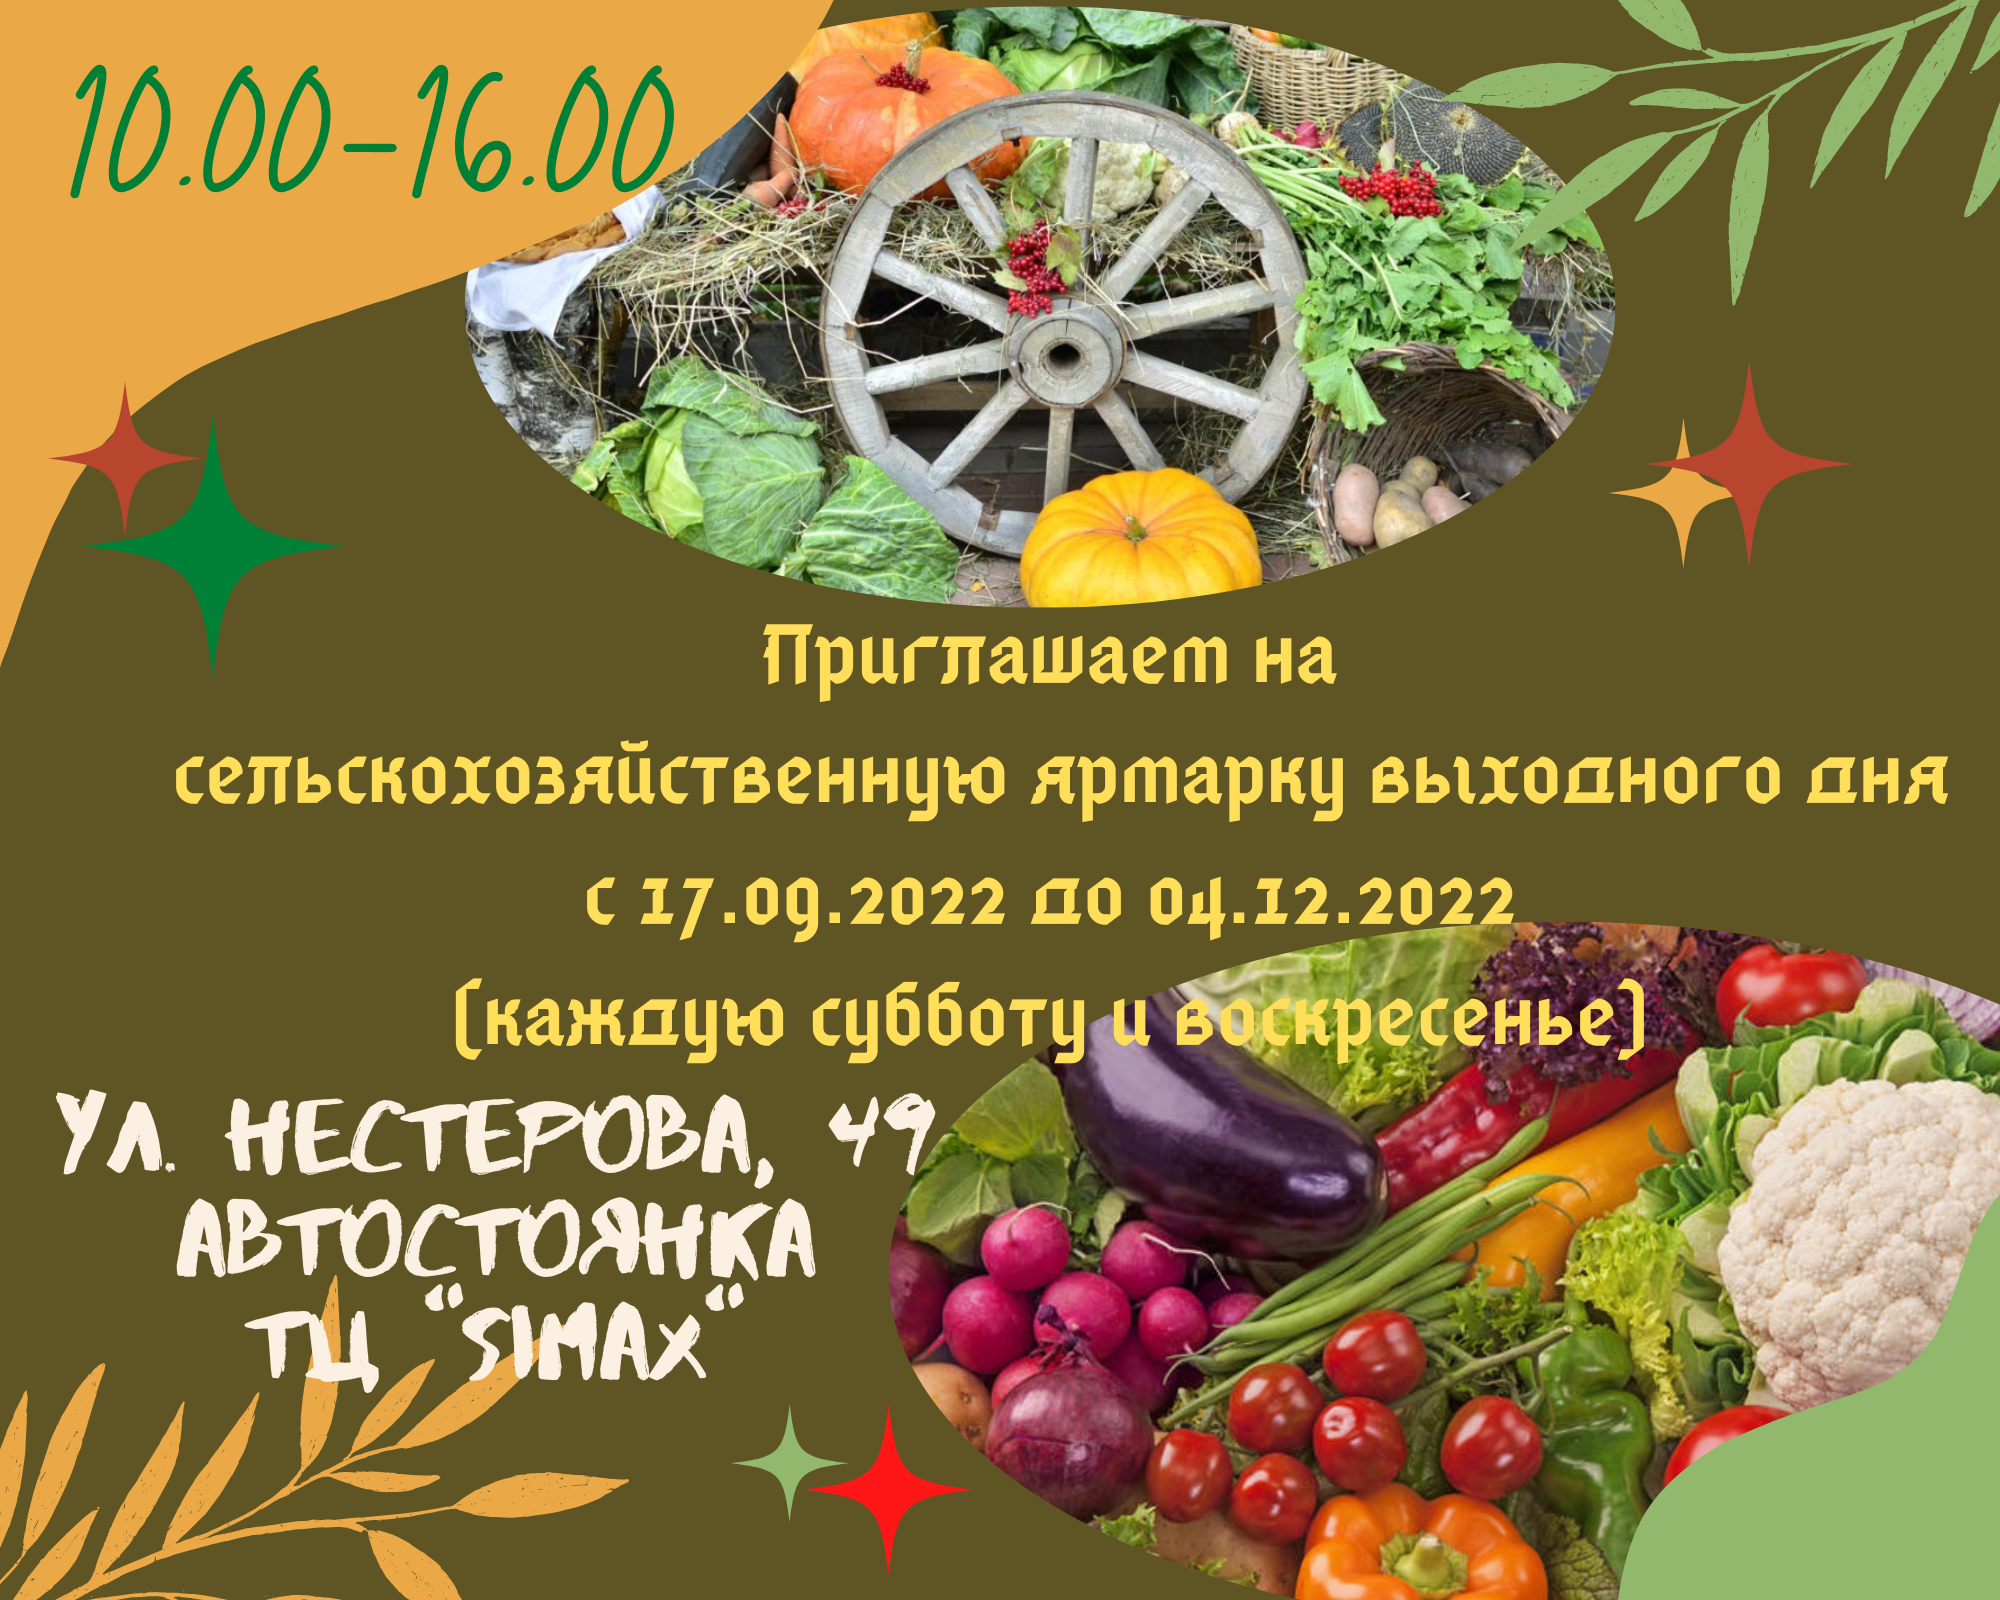 Приглашаем на сельскохозяйственную ярмарку выходного дня с 17.09.2022 до 04.12.2022